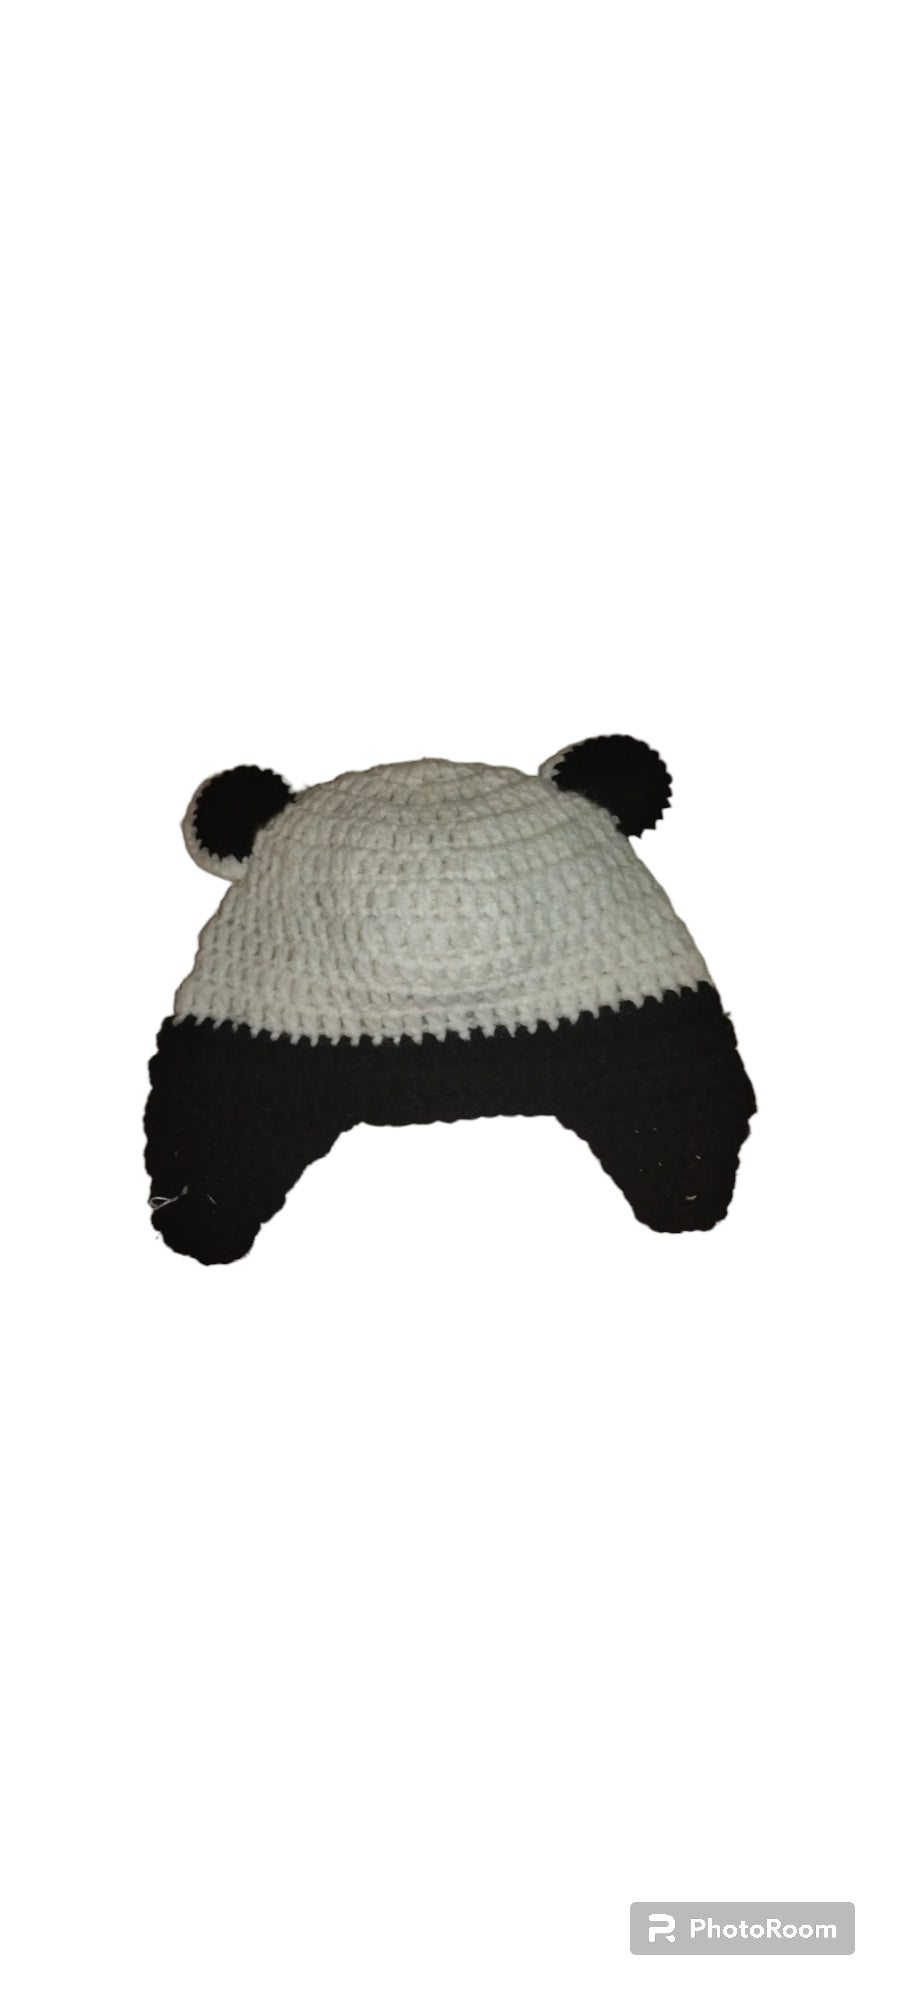 Panda hat